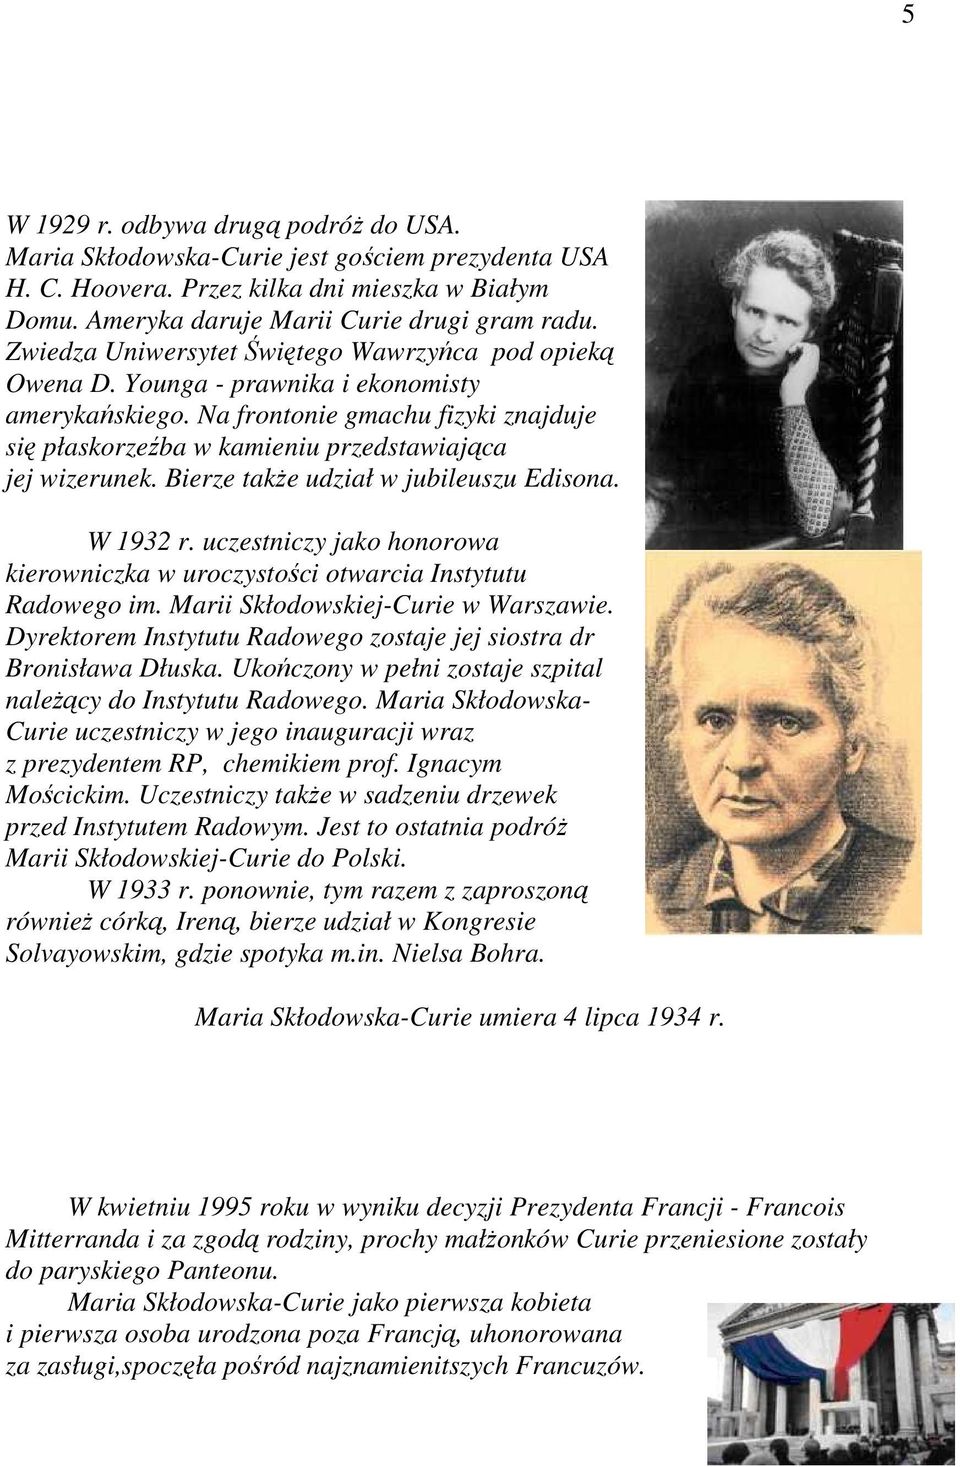 Bierze takŝe udział w jubileuszu Edisona. W 1932 r. uczestniczy jako honorowa kierowniczka w uroczystości otwarcia Instytutu Radowego im. Marii Skłodowskiej-Curie w Warszawie.